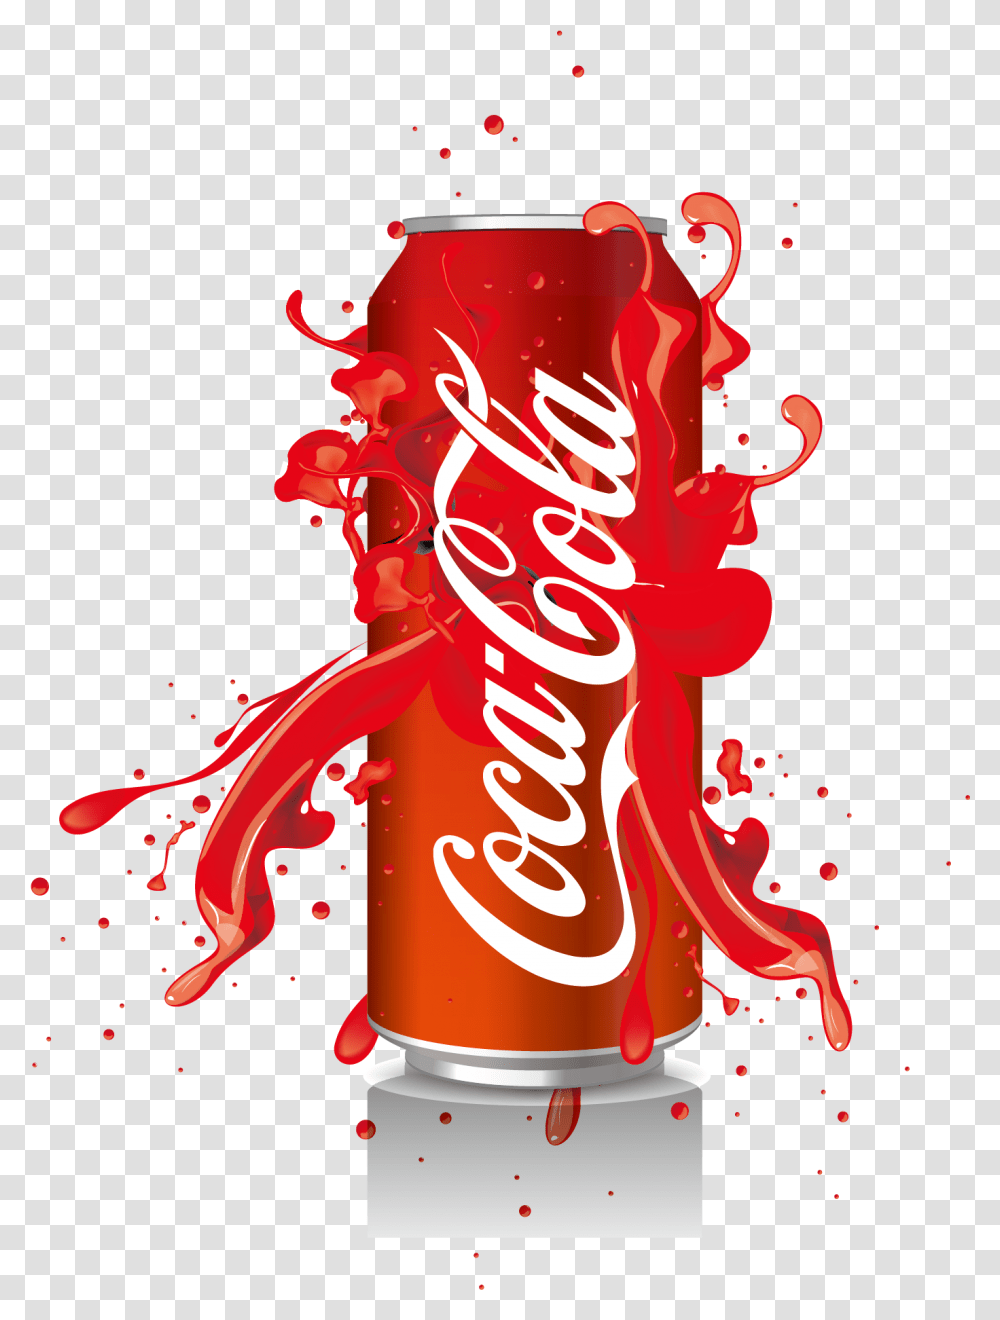 Free Cold Drink Konfest Coca Cola Can Vector, Coke, Beverage, Soda,  Transparent Png